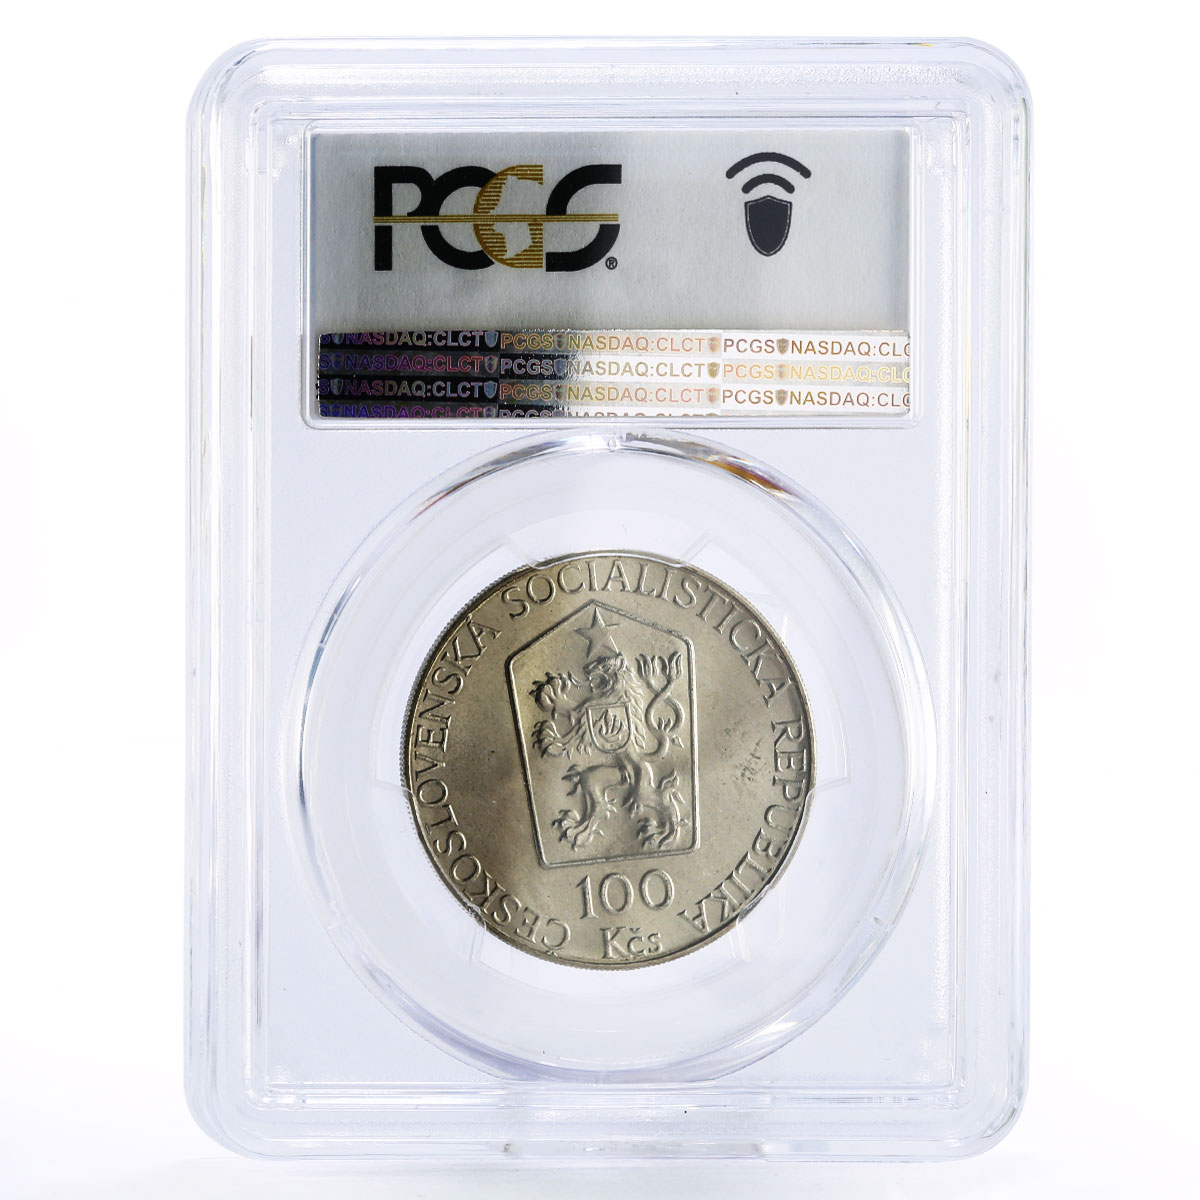 Czechoslovakia 100 korun Revolt Against Occupation MS67 PCGS silver coin 1989